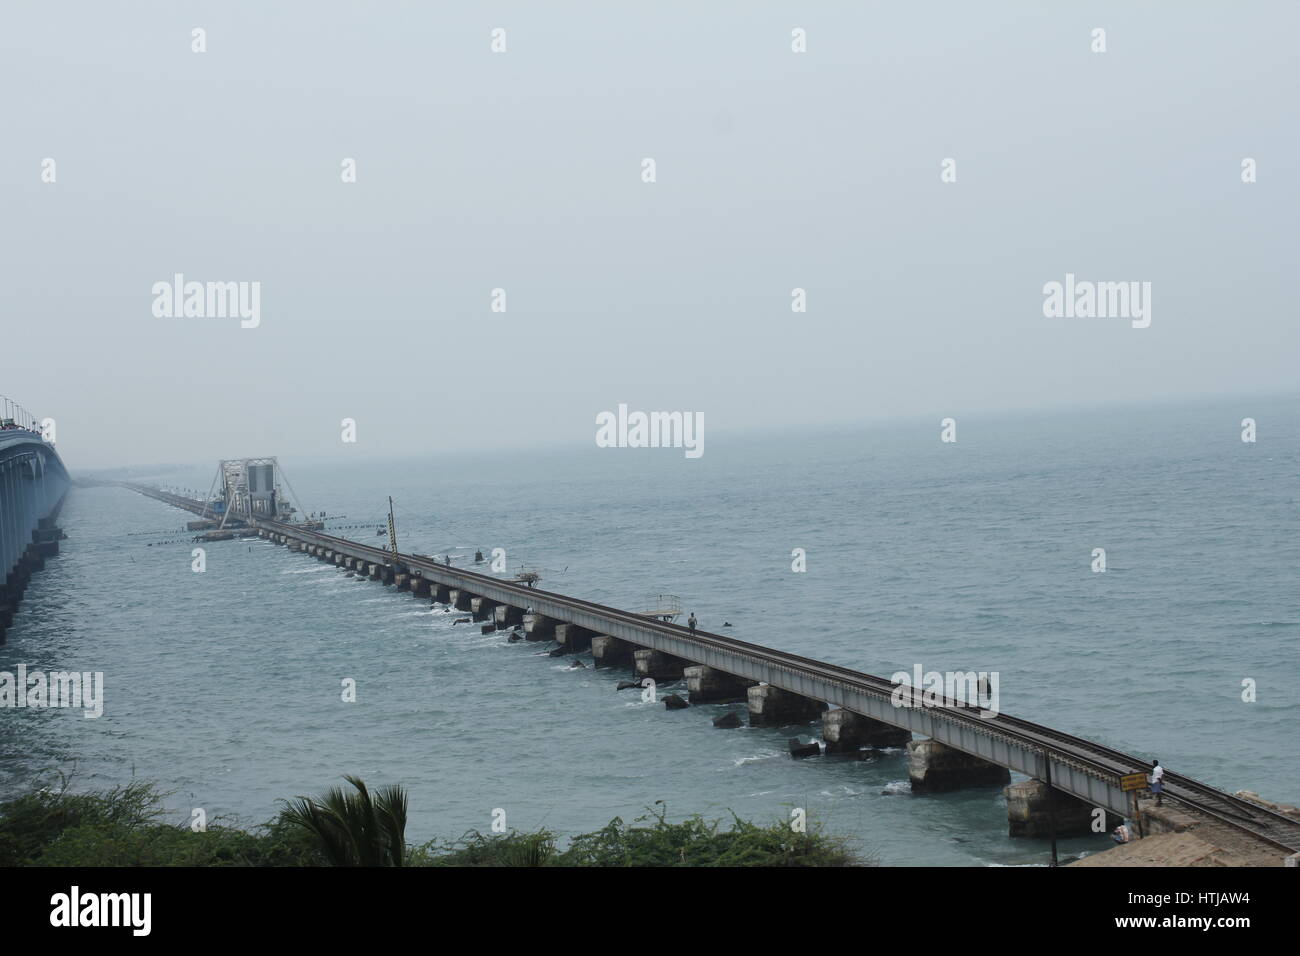 L'Pamban pont reliant la partie continentale de l'Inde à Rameswaram Banque D'Images